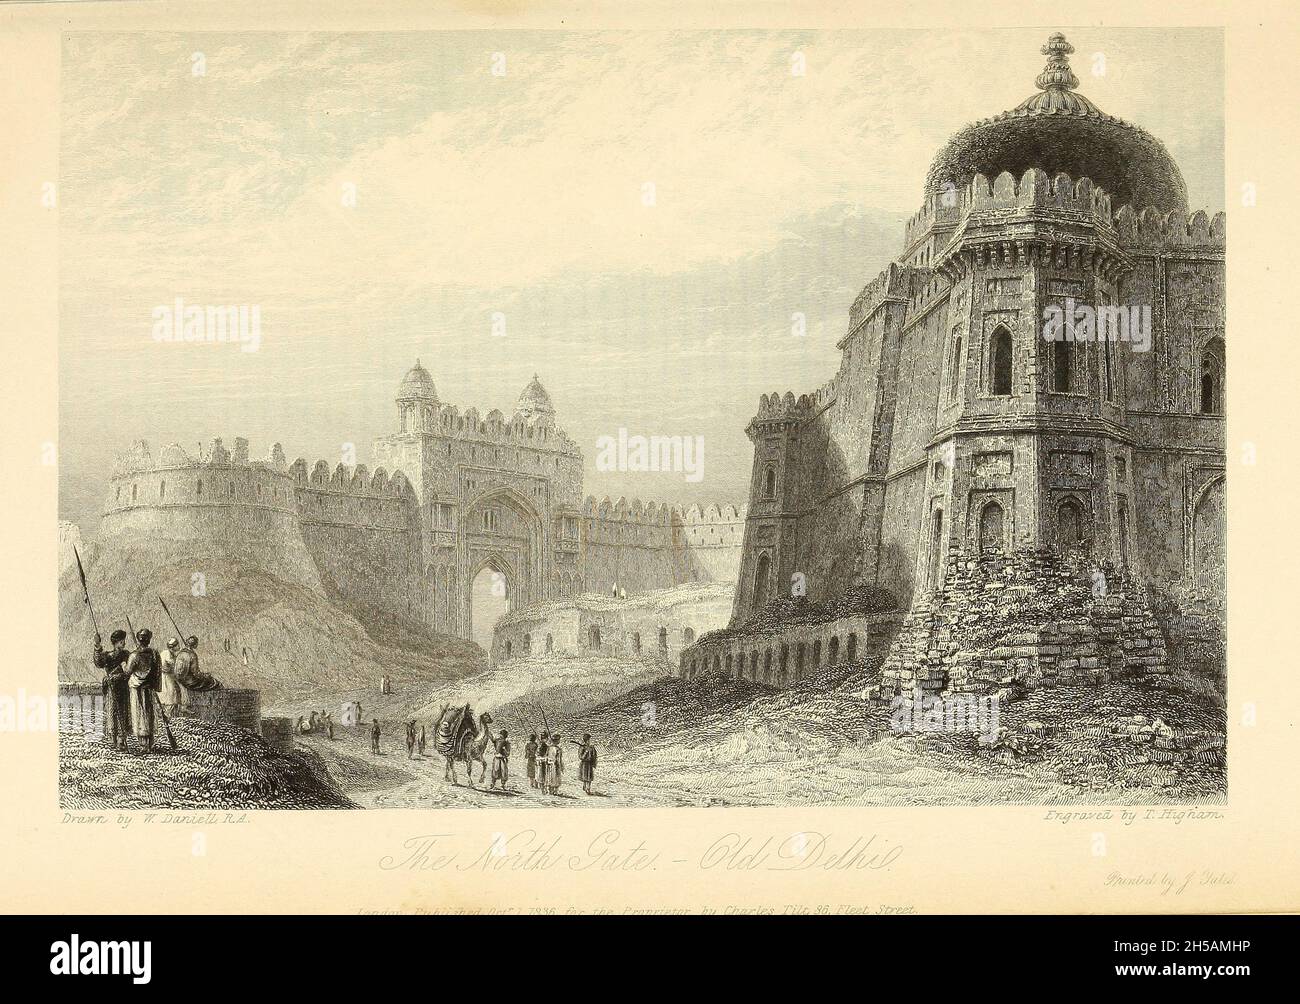 LA PORTE DU NORD, LE VIEUX DELHI [Old Delhi ou Purani Dilli est une région de la grande ville de Delhi, en Inde.Elle a été fondée comme une ville fortifiée nommée Shahjahanabad en 1639, lorsque Shah Jahan (l'empereur moghol à l'époque) a décidé de déplacer la capitale moghole d'Agra.[1] la construction de la ville a été achevée en 1648,Et il est resté la capitale de l'empire moghol jusqu'à sa chute en 1857,] du livre ' l'annuel oriental, ou, les vies des empereurs moghul ' par le Rév. Hobart Caunter publié par Edward Bull, Londres 1837 gravures de dessins de William Daniell Banque D'Images